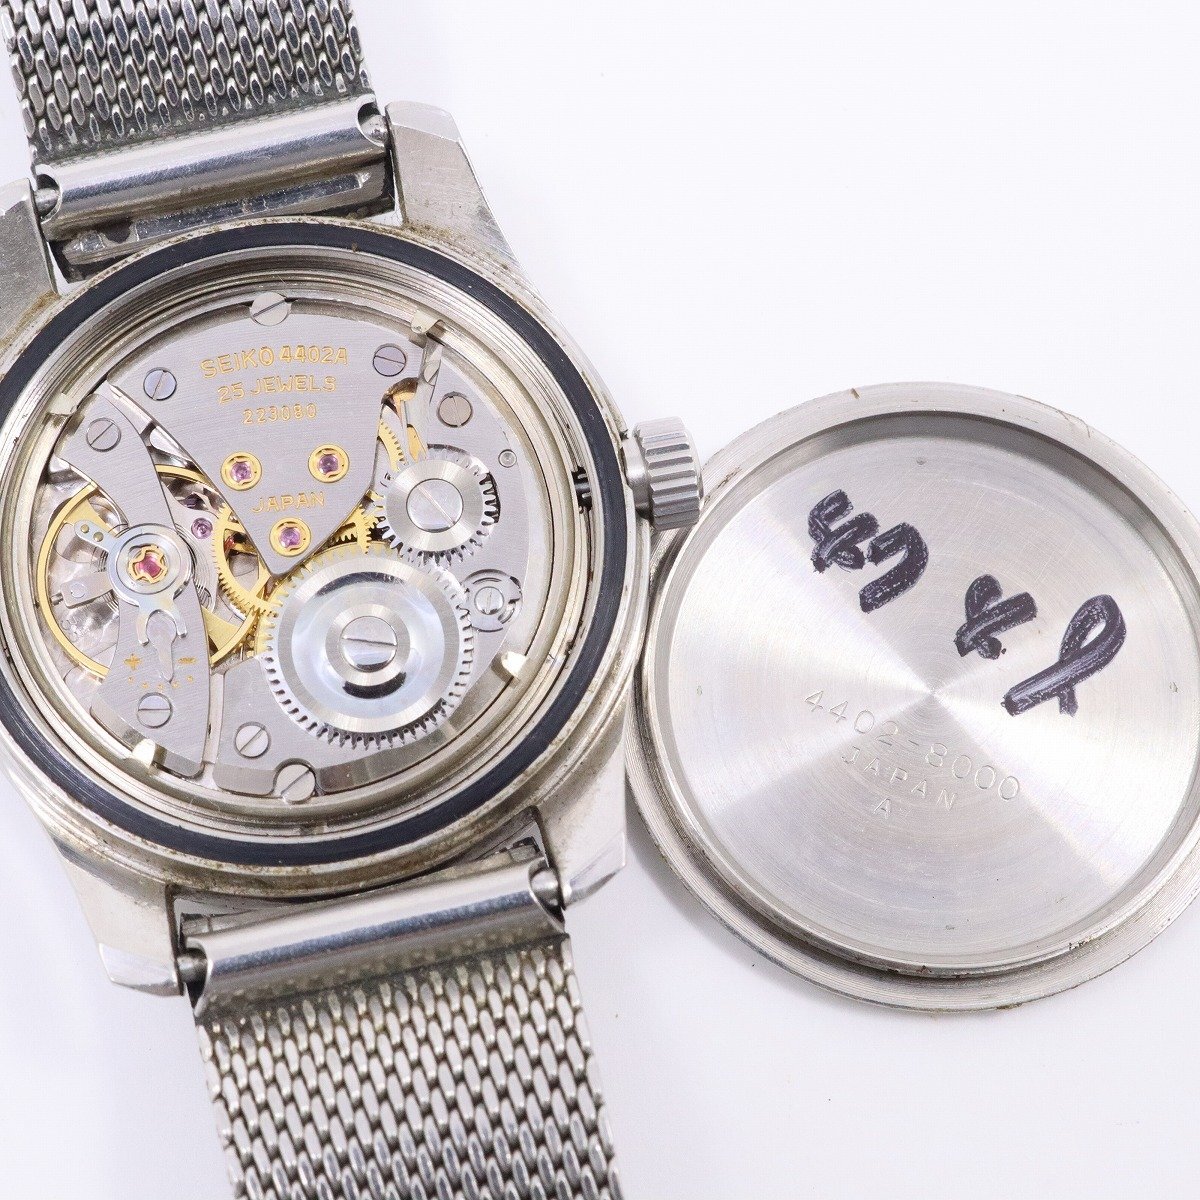 SEIKO キングセイコー 44KS セカンドモデル 1967年製 手巻き メンズ 腕時計 シルバー文字盤 社外ベルト 4402-8000【いおき質店】_画像10